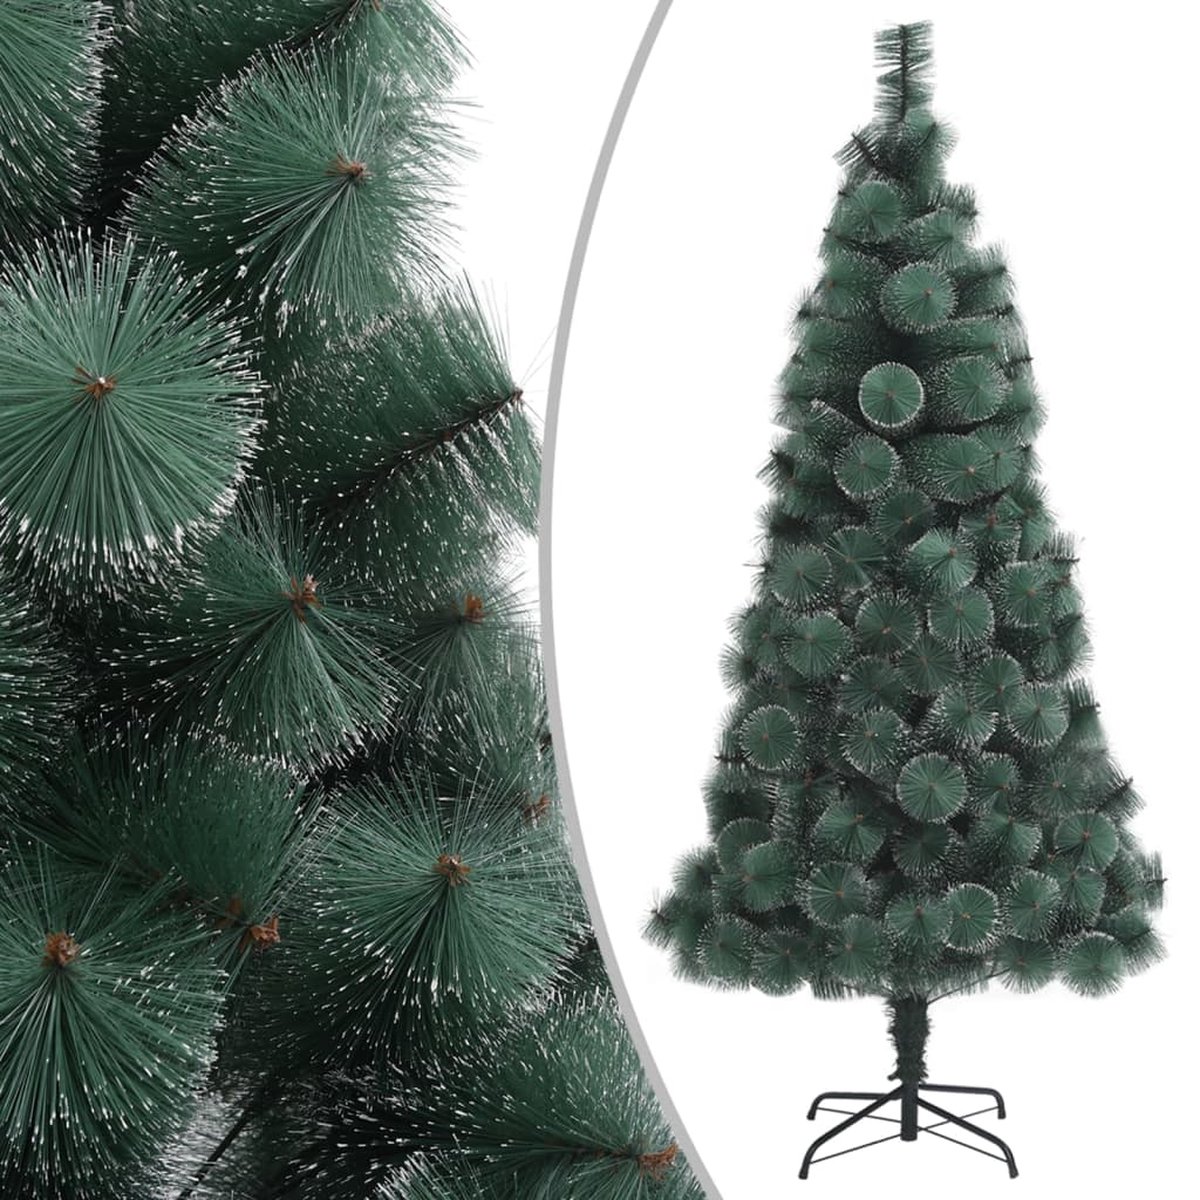 VidaLife Kunstkerstboom met standaard 120 cm PET groen